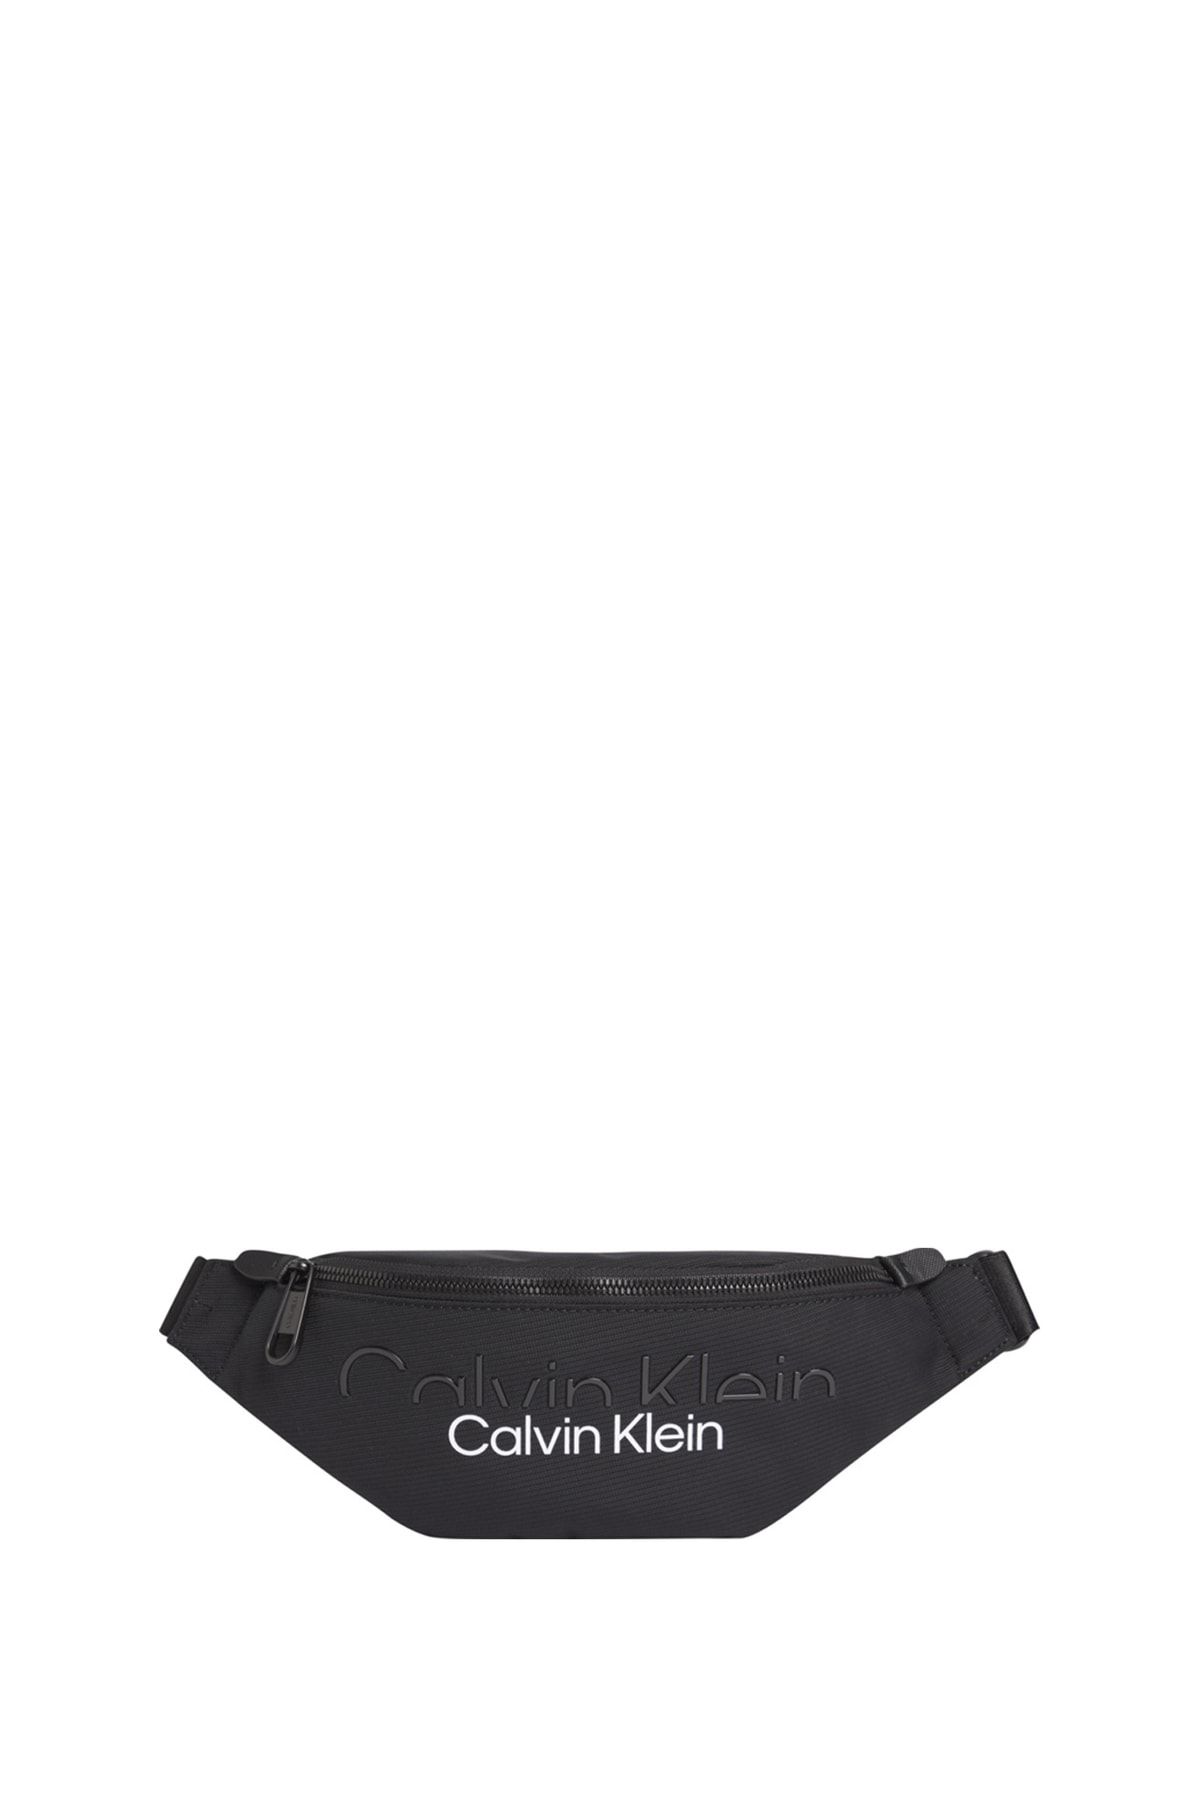 Calvin Klein Erkek Siyah Postacı Çantası 5002818327